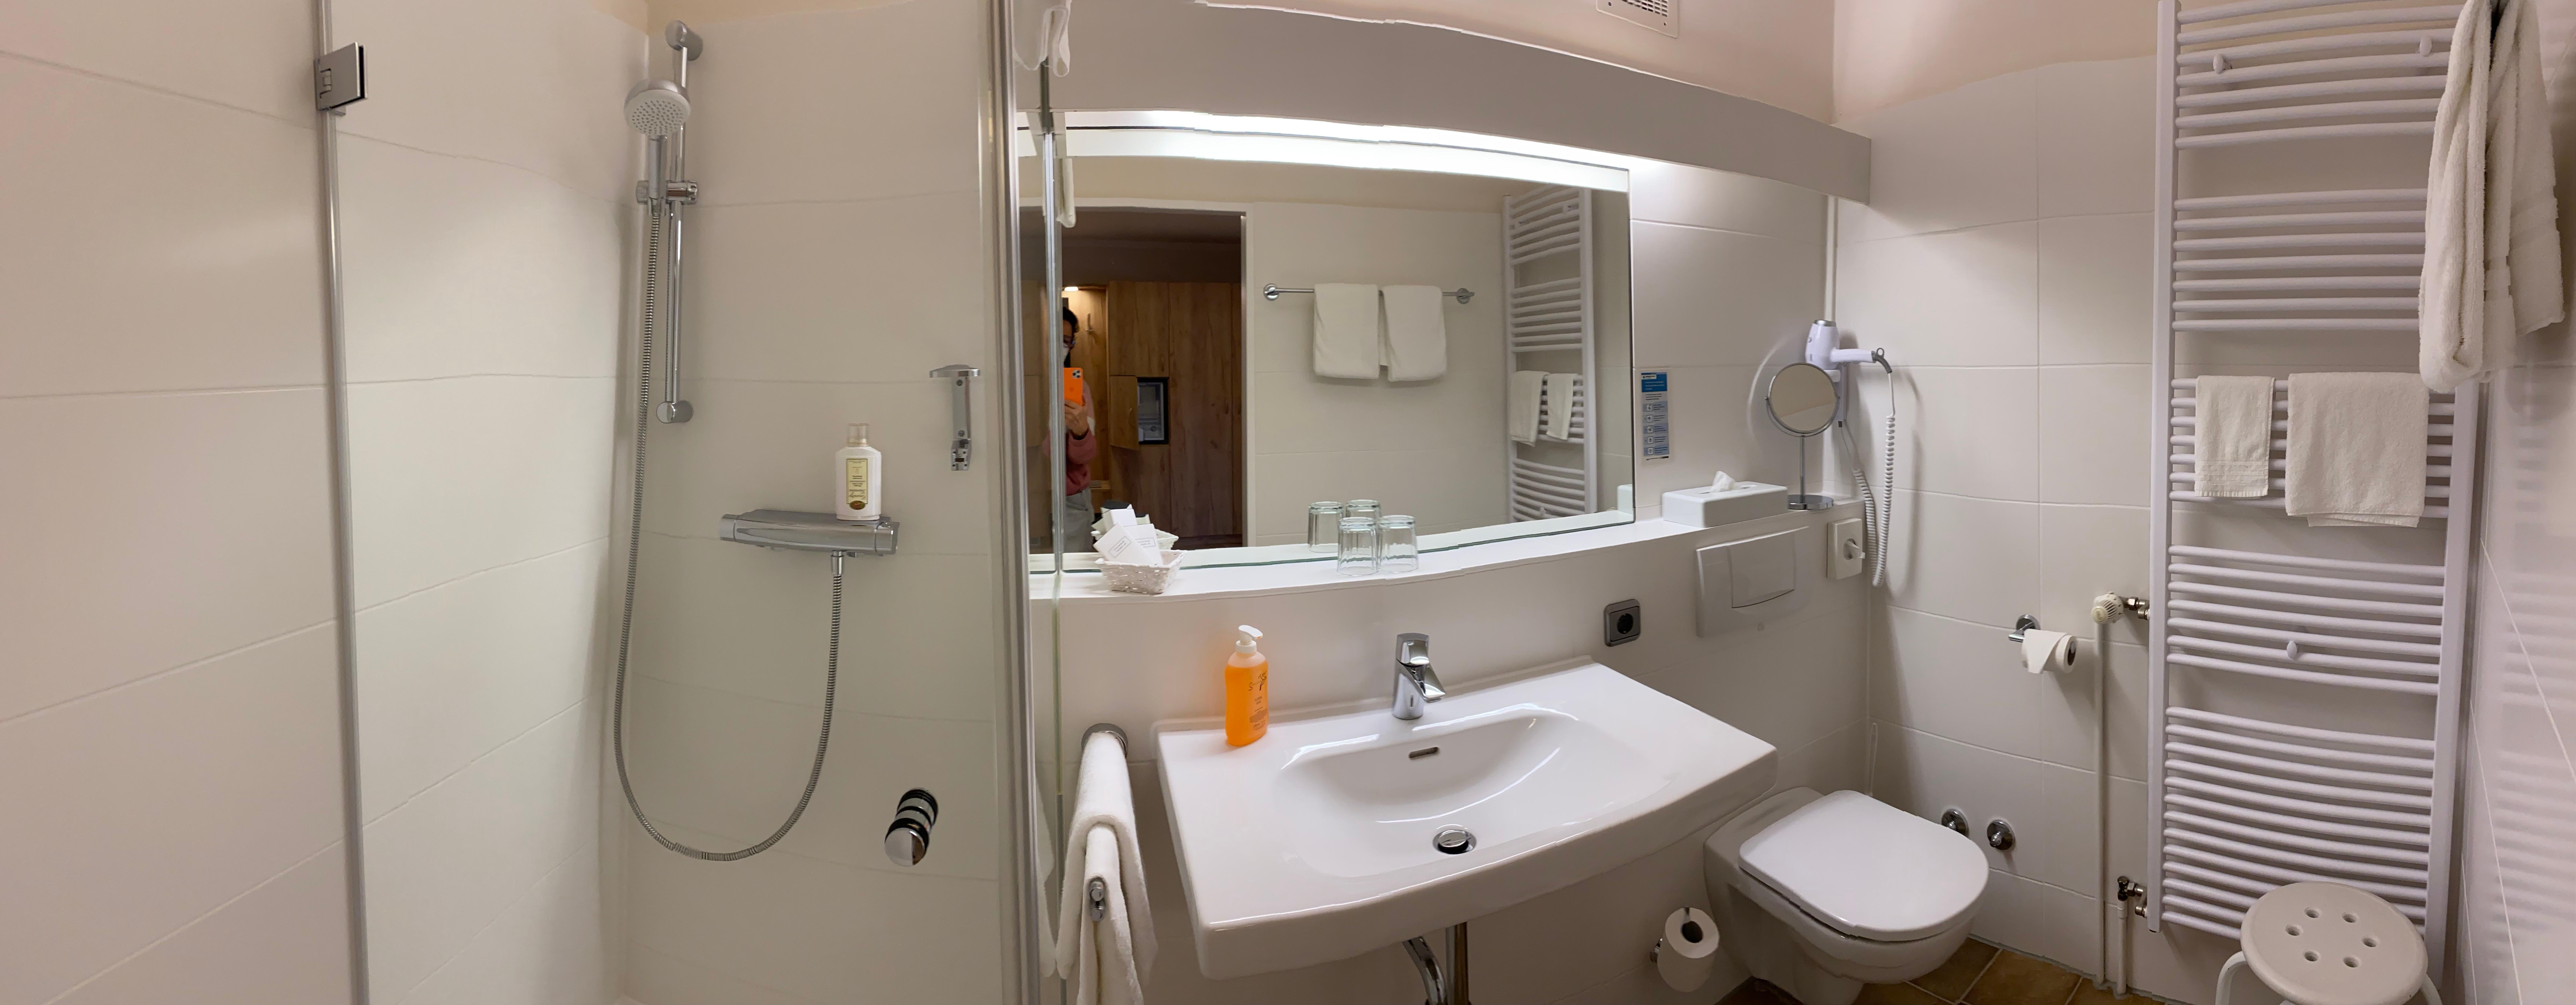 Die modernen Badezimmer sind mit einer komfortablen Dusche, einer Toilette sowie vielen Extras wie Föhn, wärmende Heizkörper und Handtüchern ausgestattet.